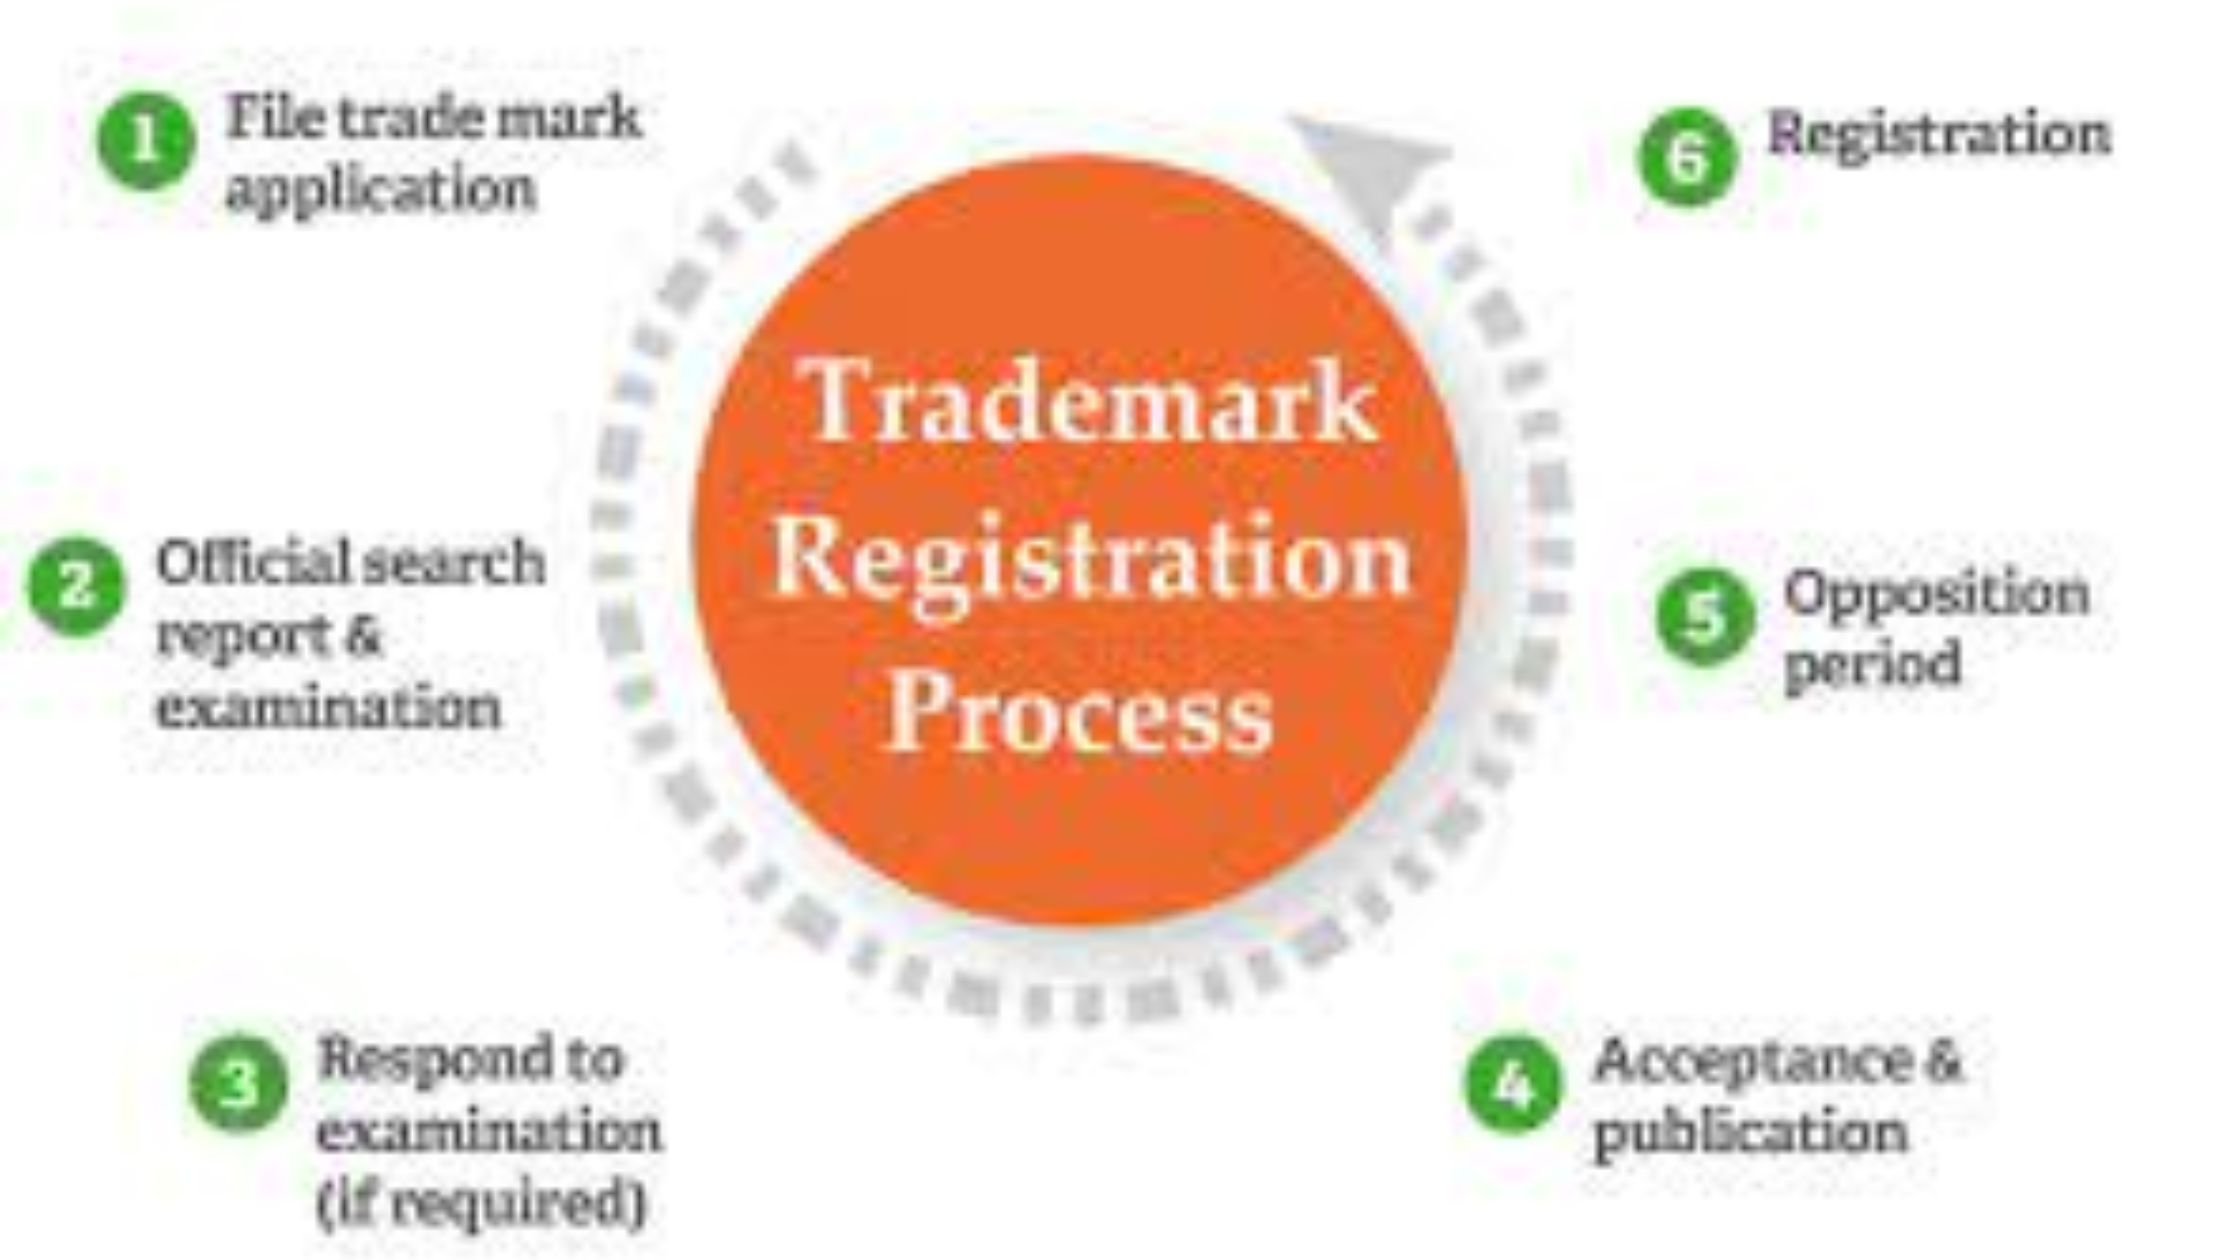 Trademark registration process